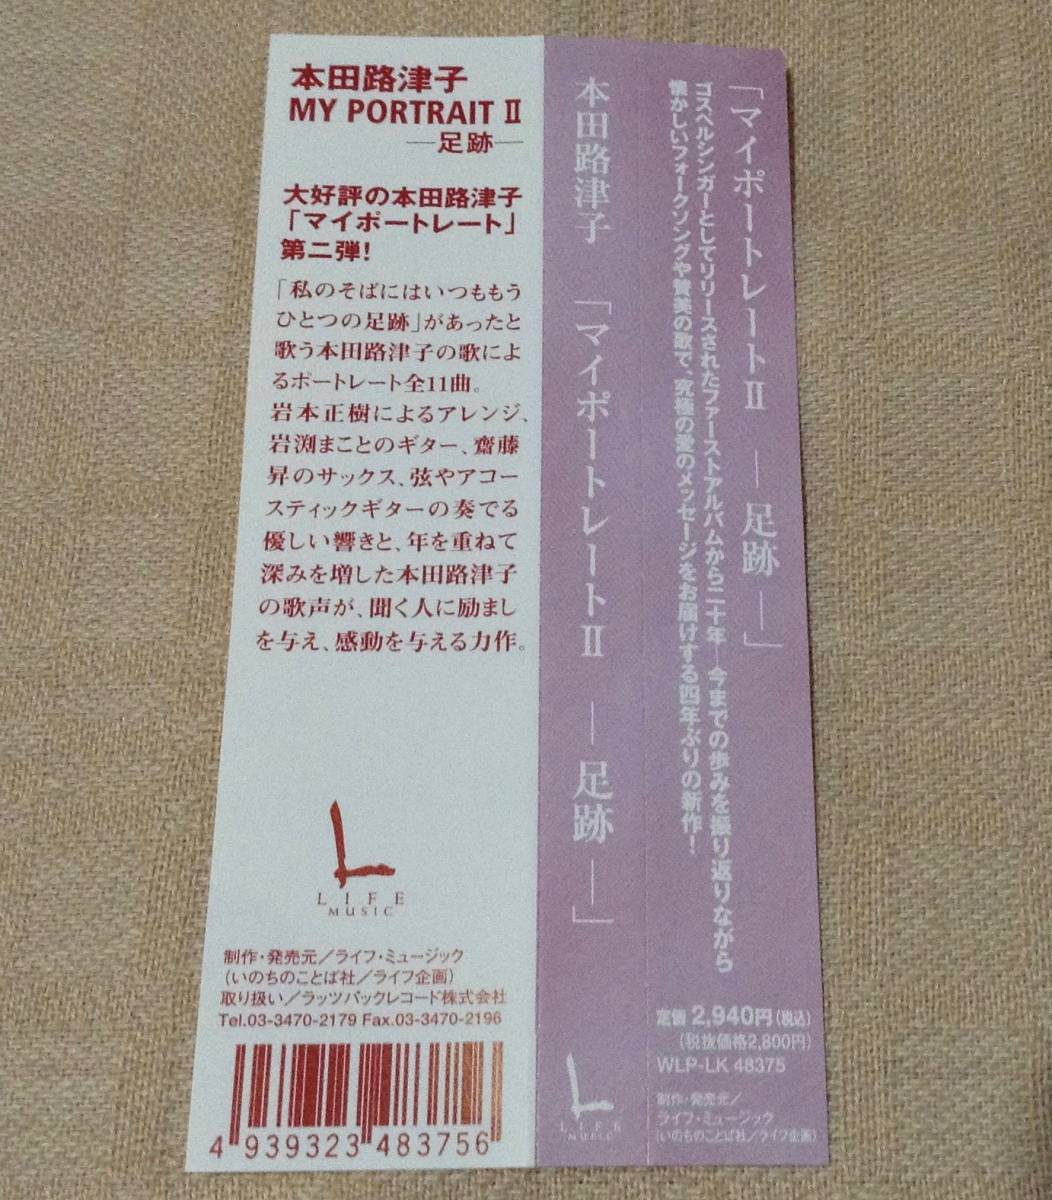 本田路津子「MY PORTRAIT/マイポートレートII -足跡-」